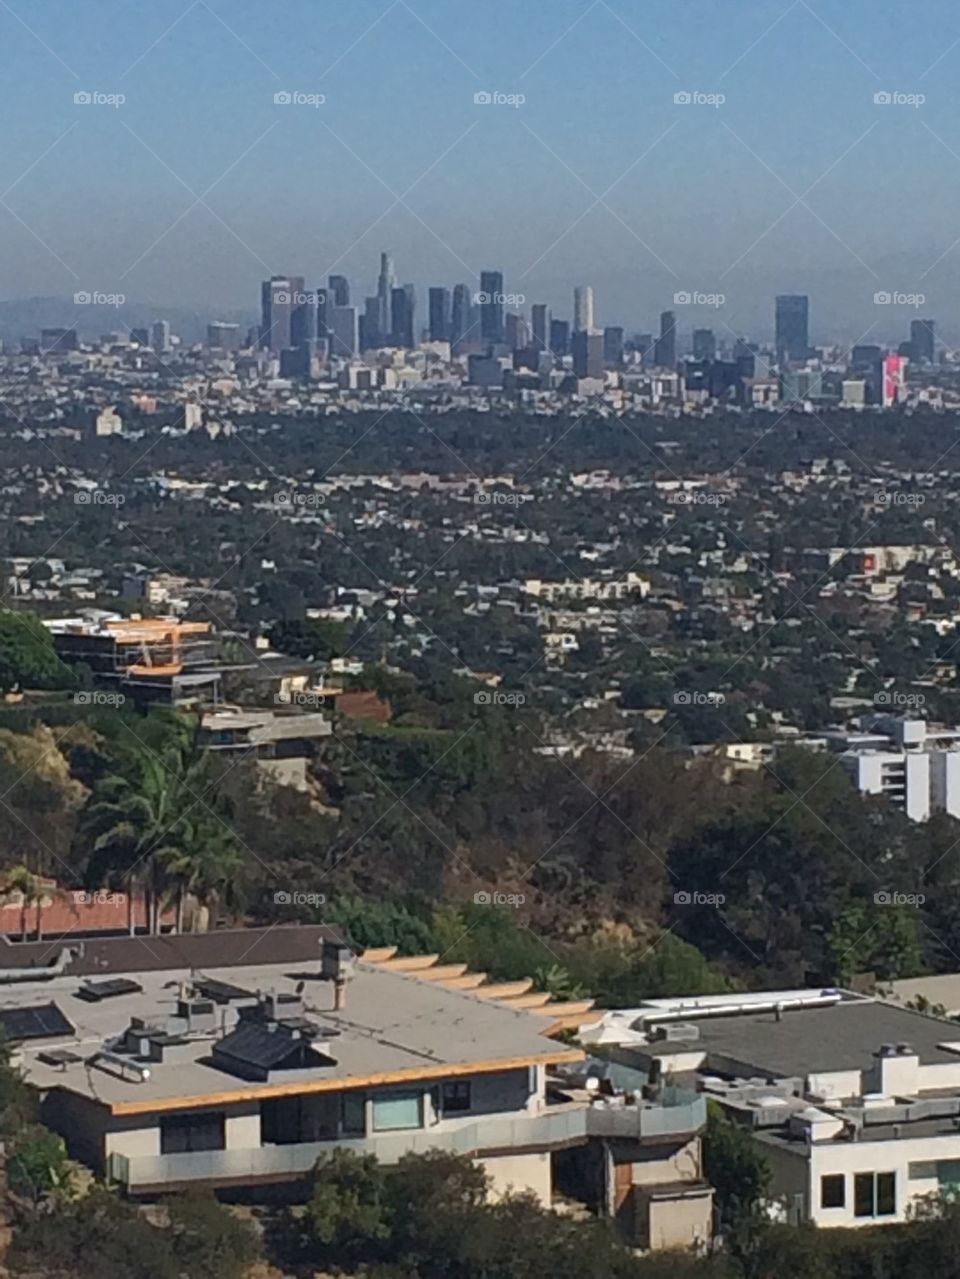 LA Overview